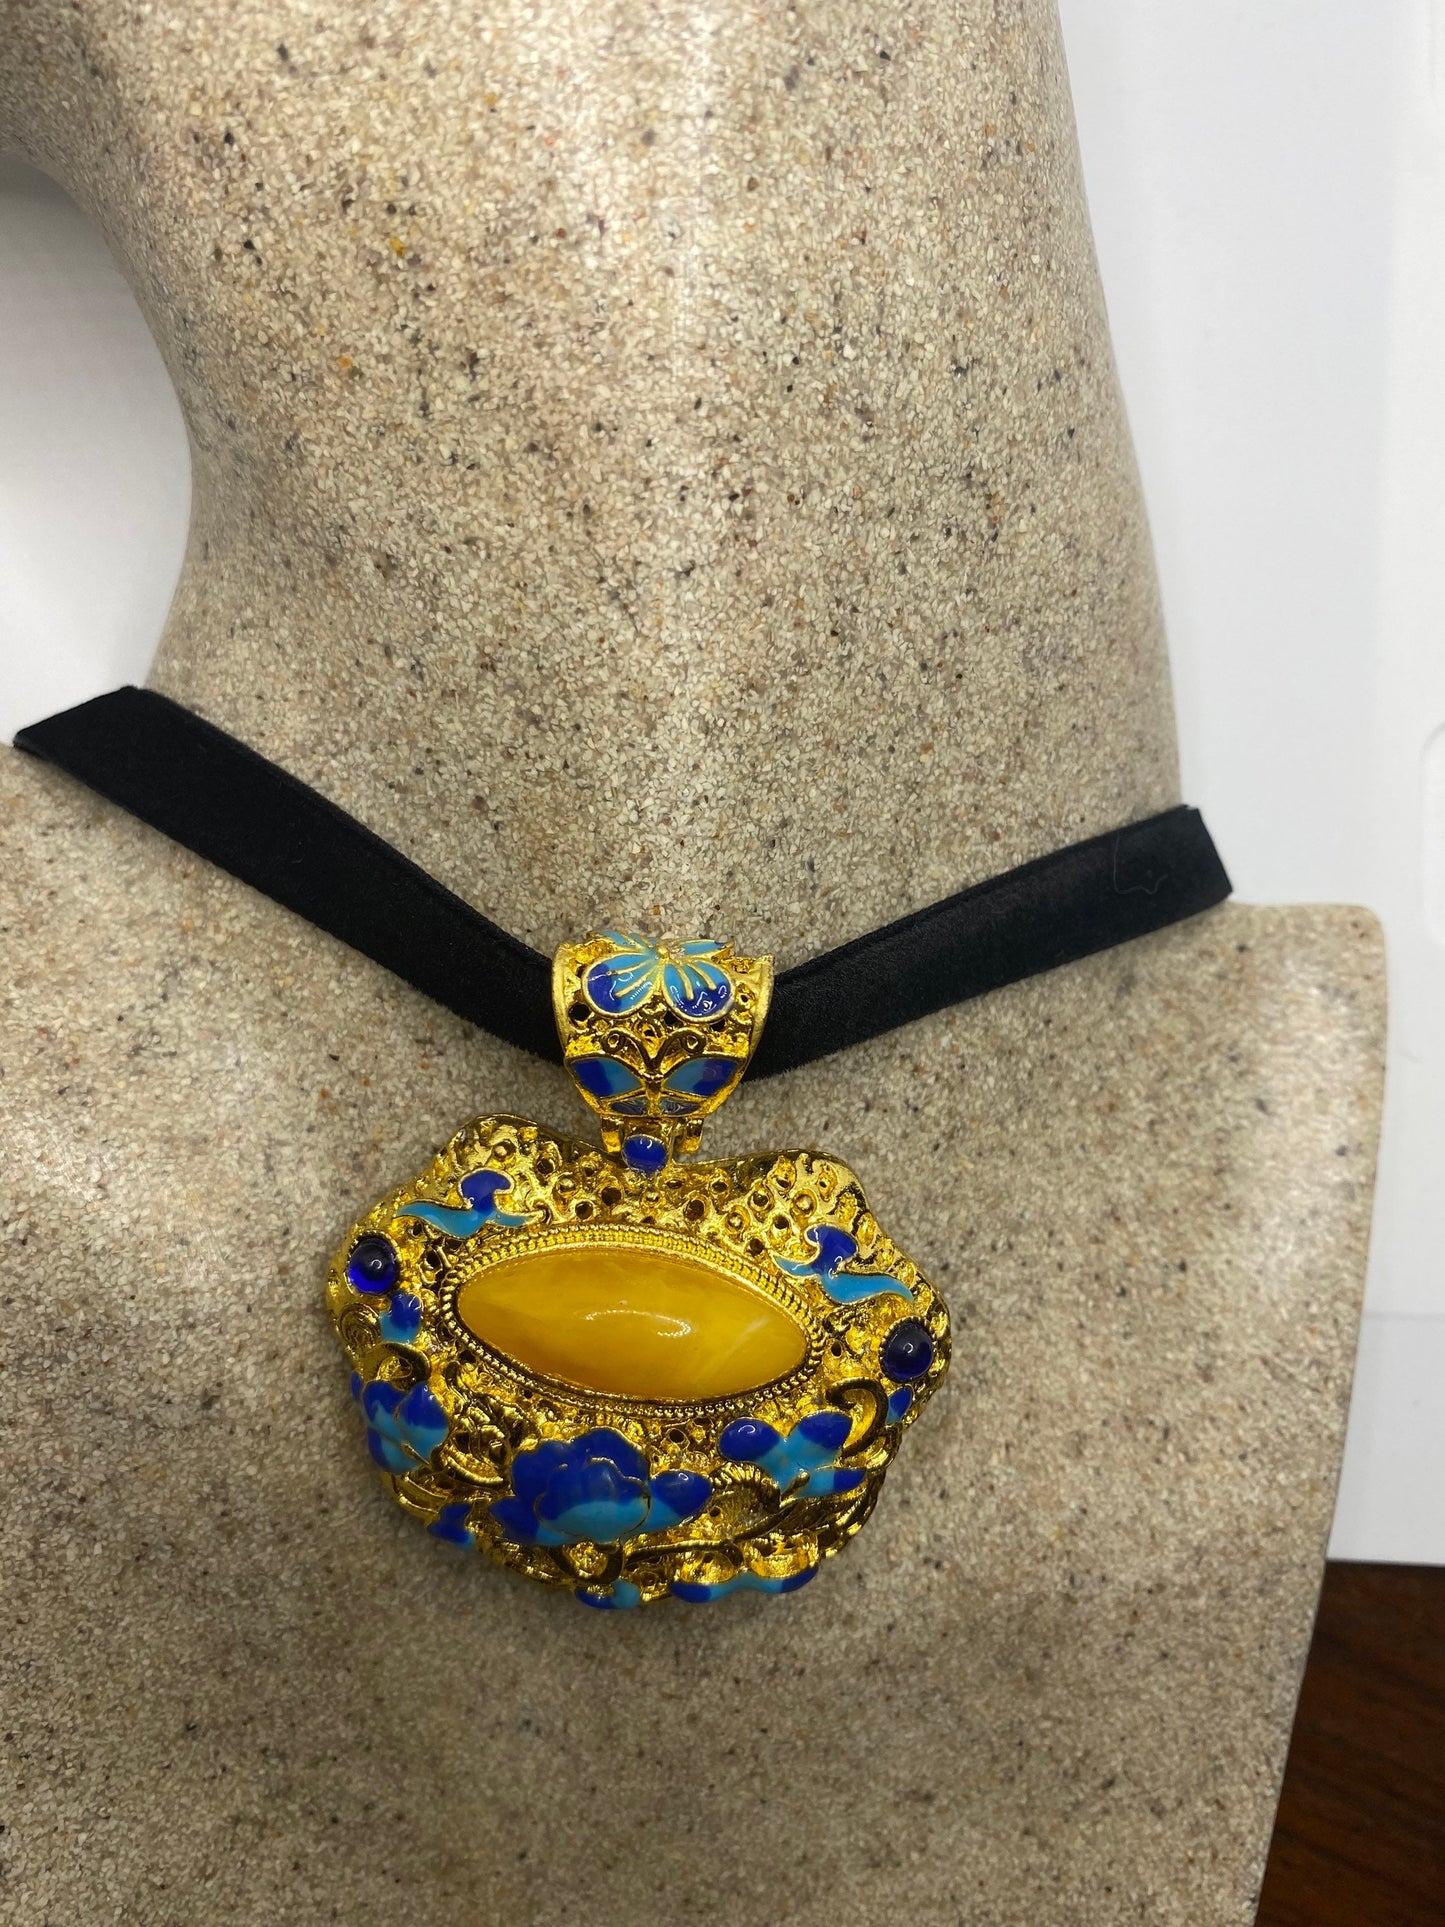 Vintage Cloisonné Choker Pendant Necklace Golden with Blue Enamel